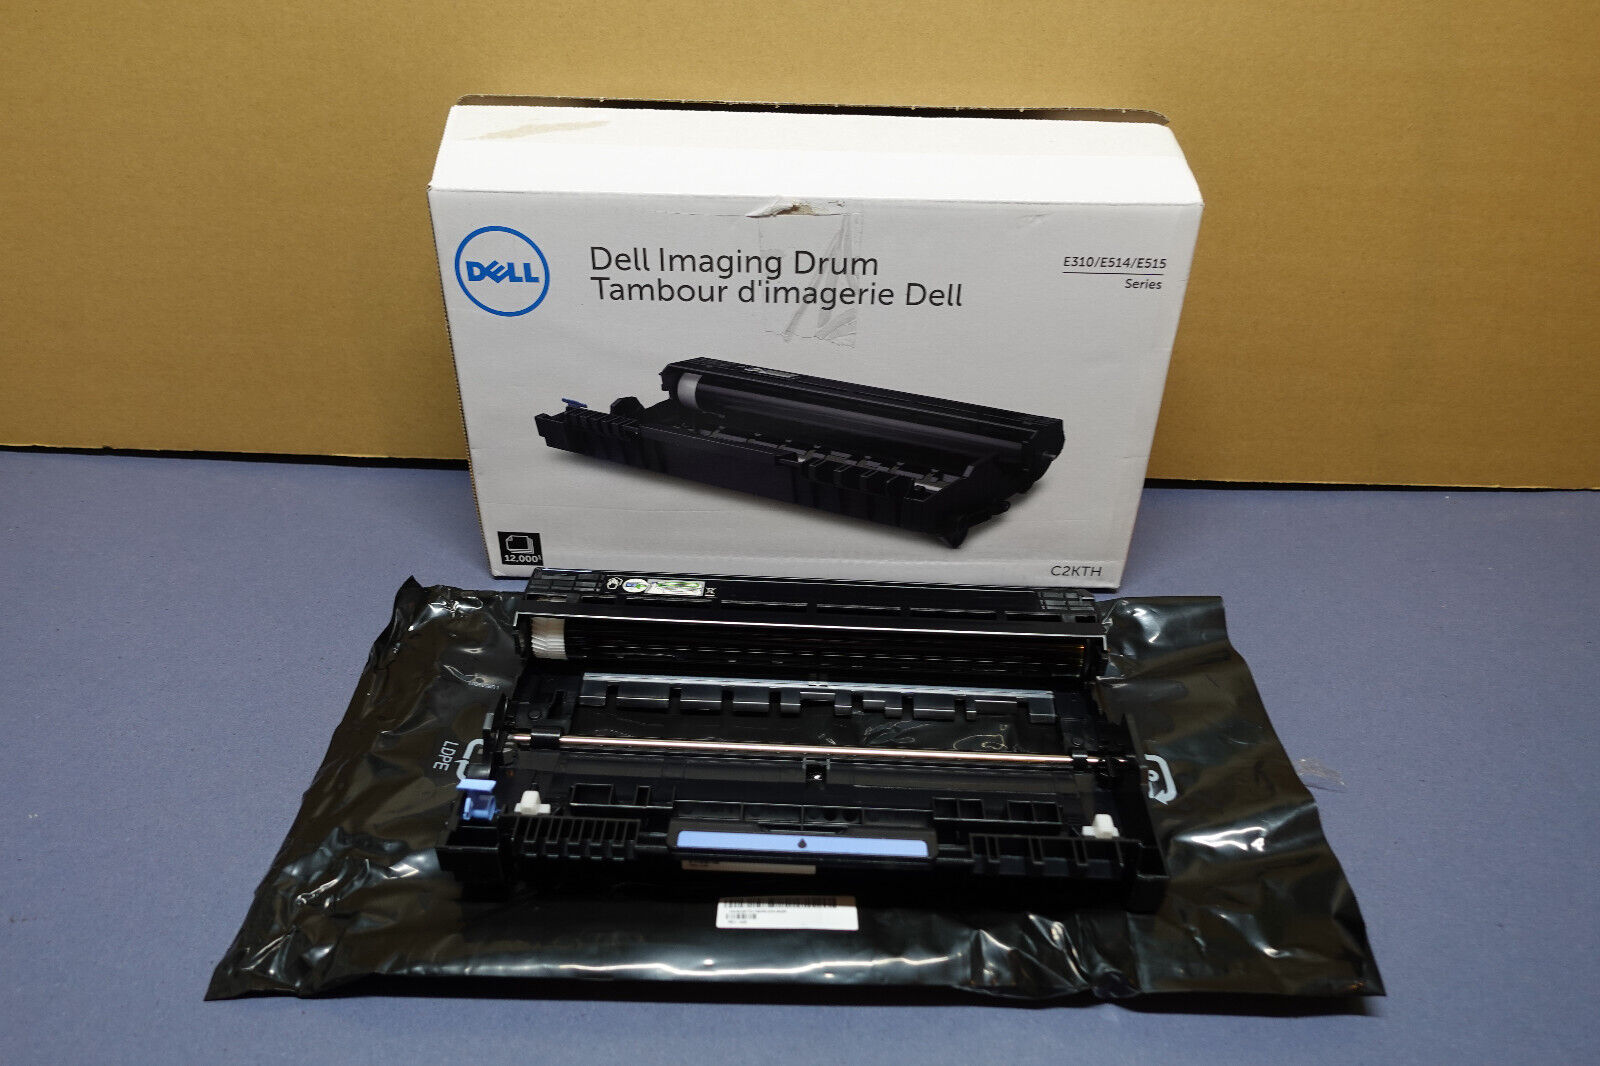 Genuine Dell Imaging Drum CT351071 C2KTH E310/E514/E515 Series - 